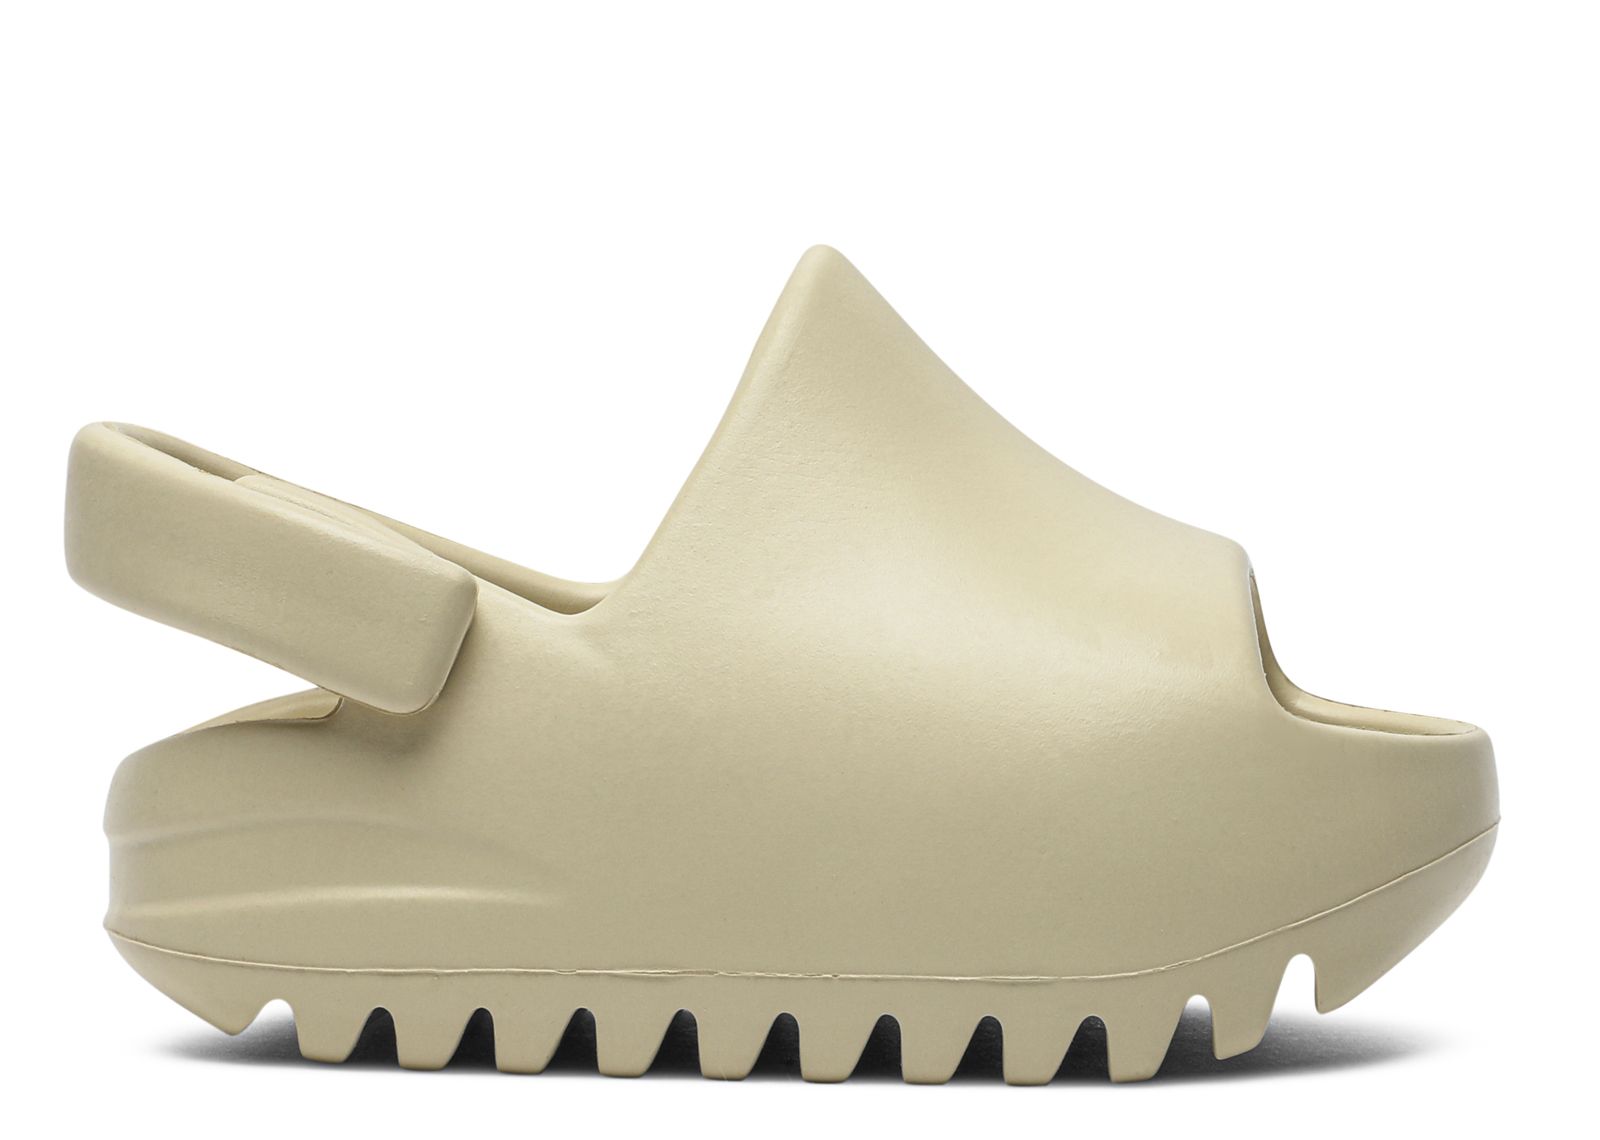 Yeezy Slides Infant 'Bone' - Adidas 